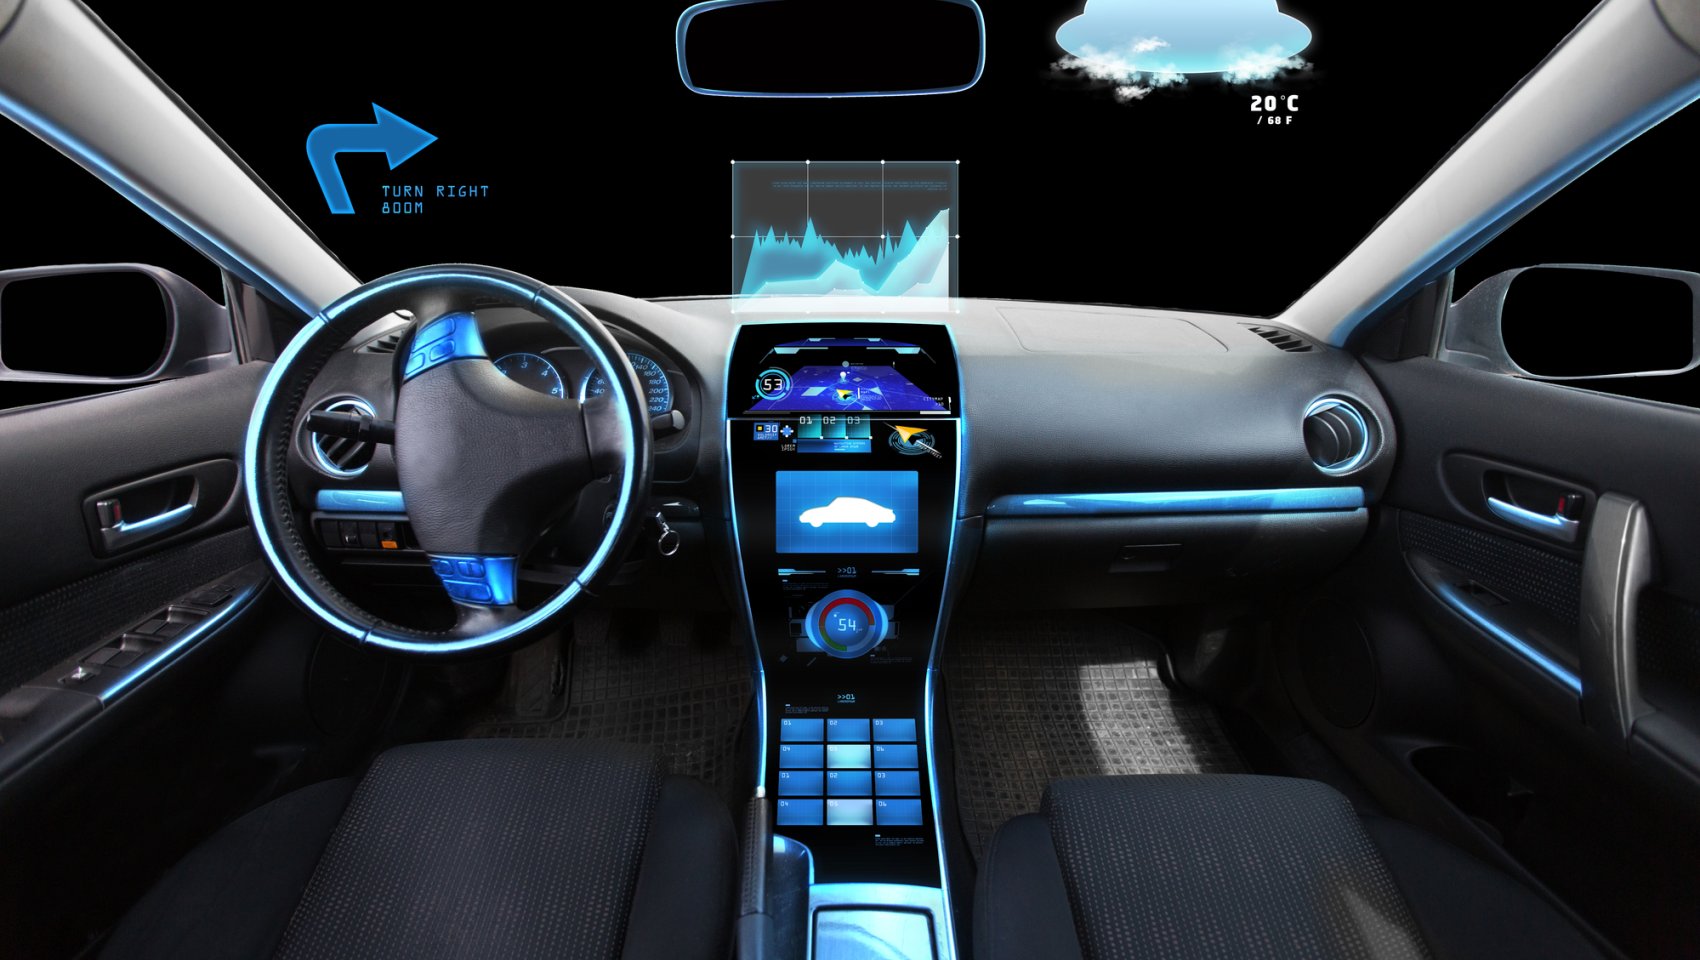 Digital technology in car